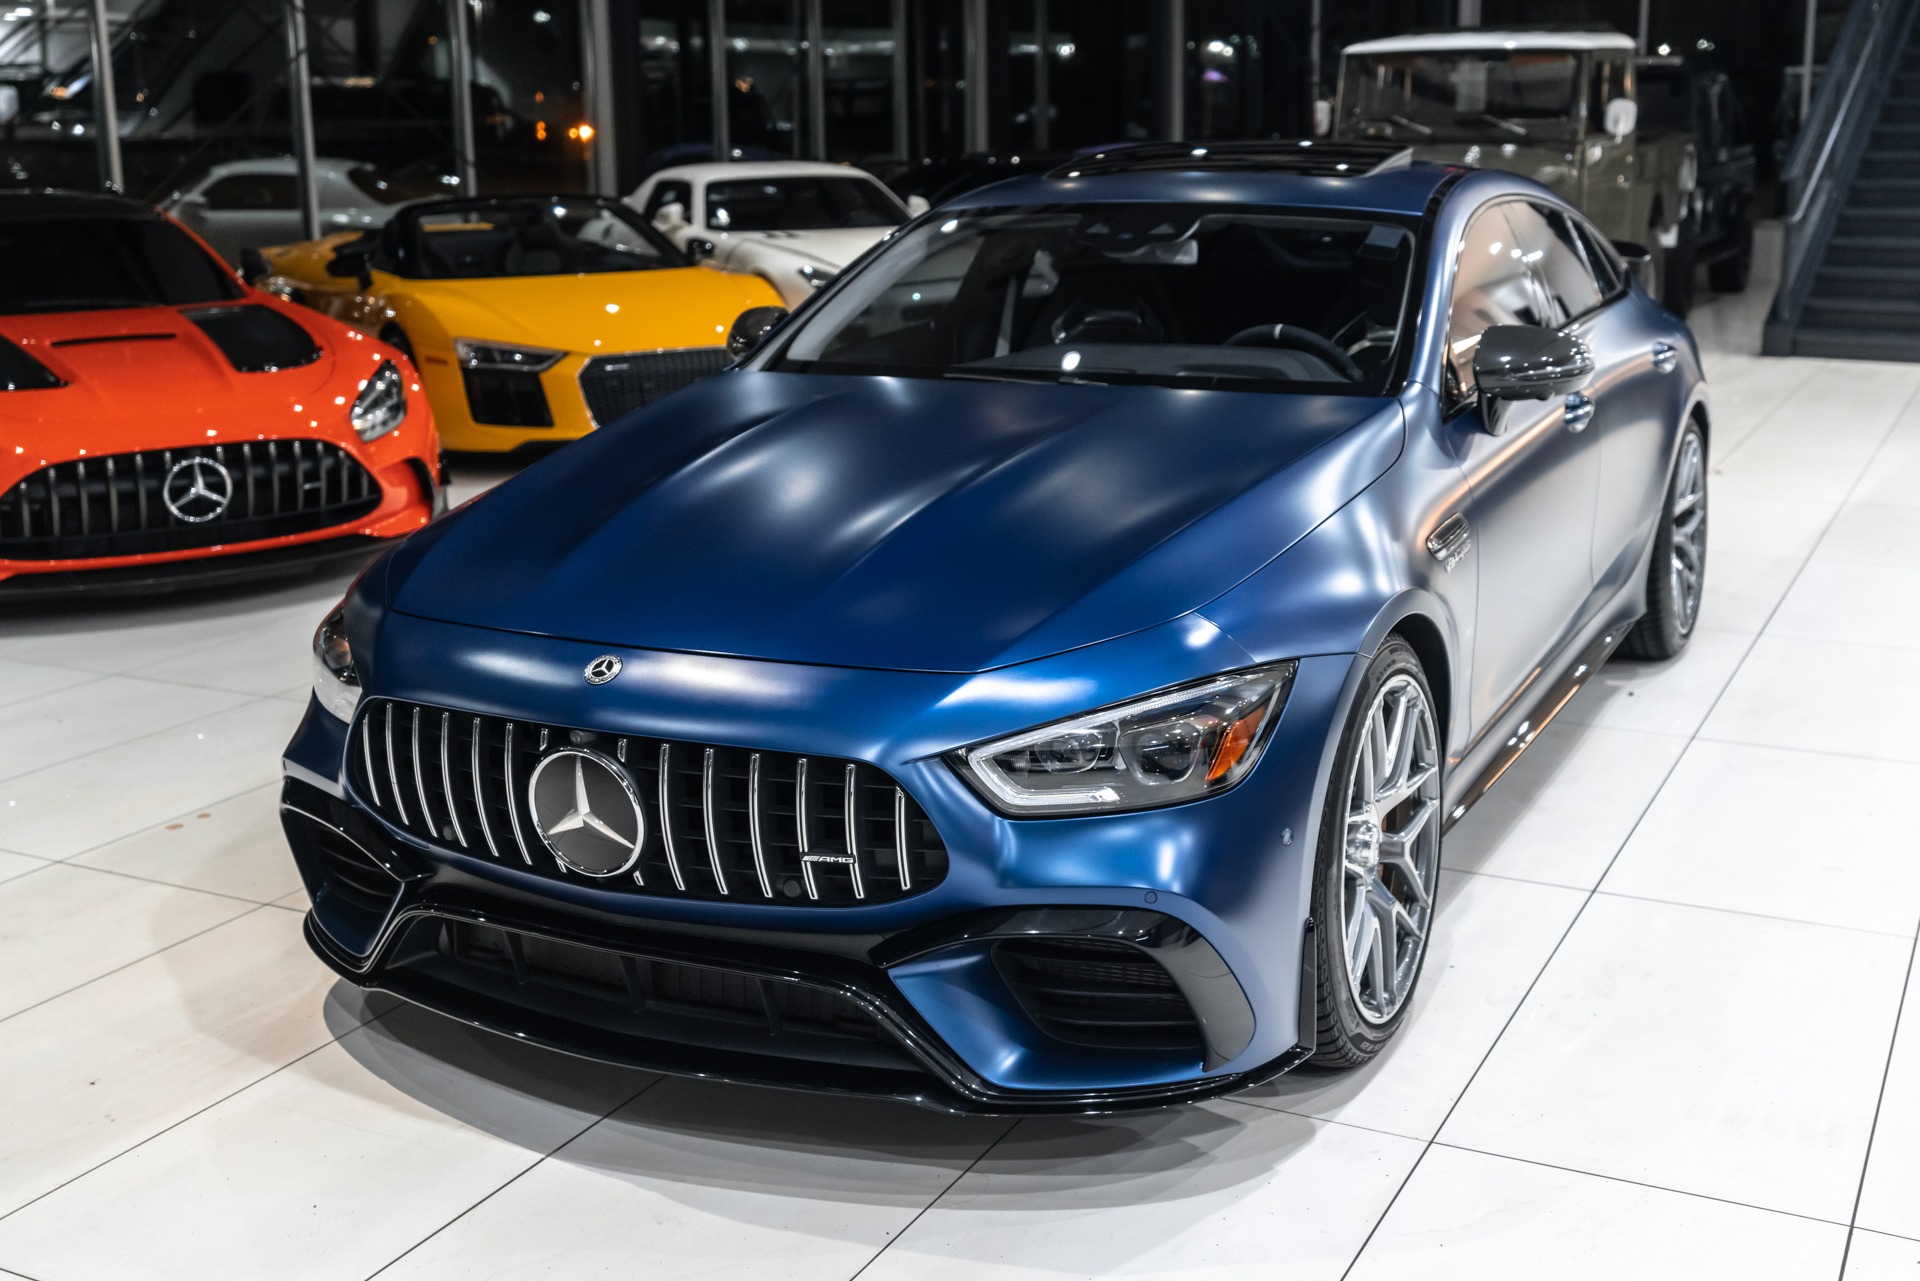 Used-2019-Mercedes-Benz-AMG-GT63S-4Matic-Sedan-Carbon-Ceramic-Brakes-Carbon-Fiber-Pkg-HUGE-MSRP